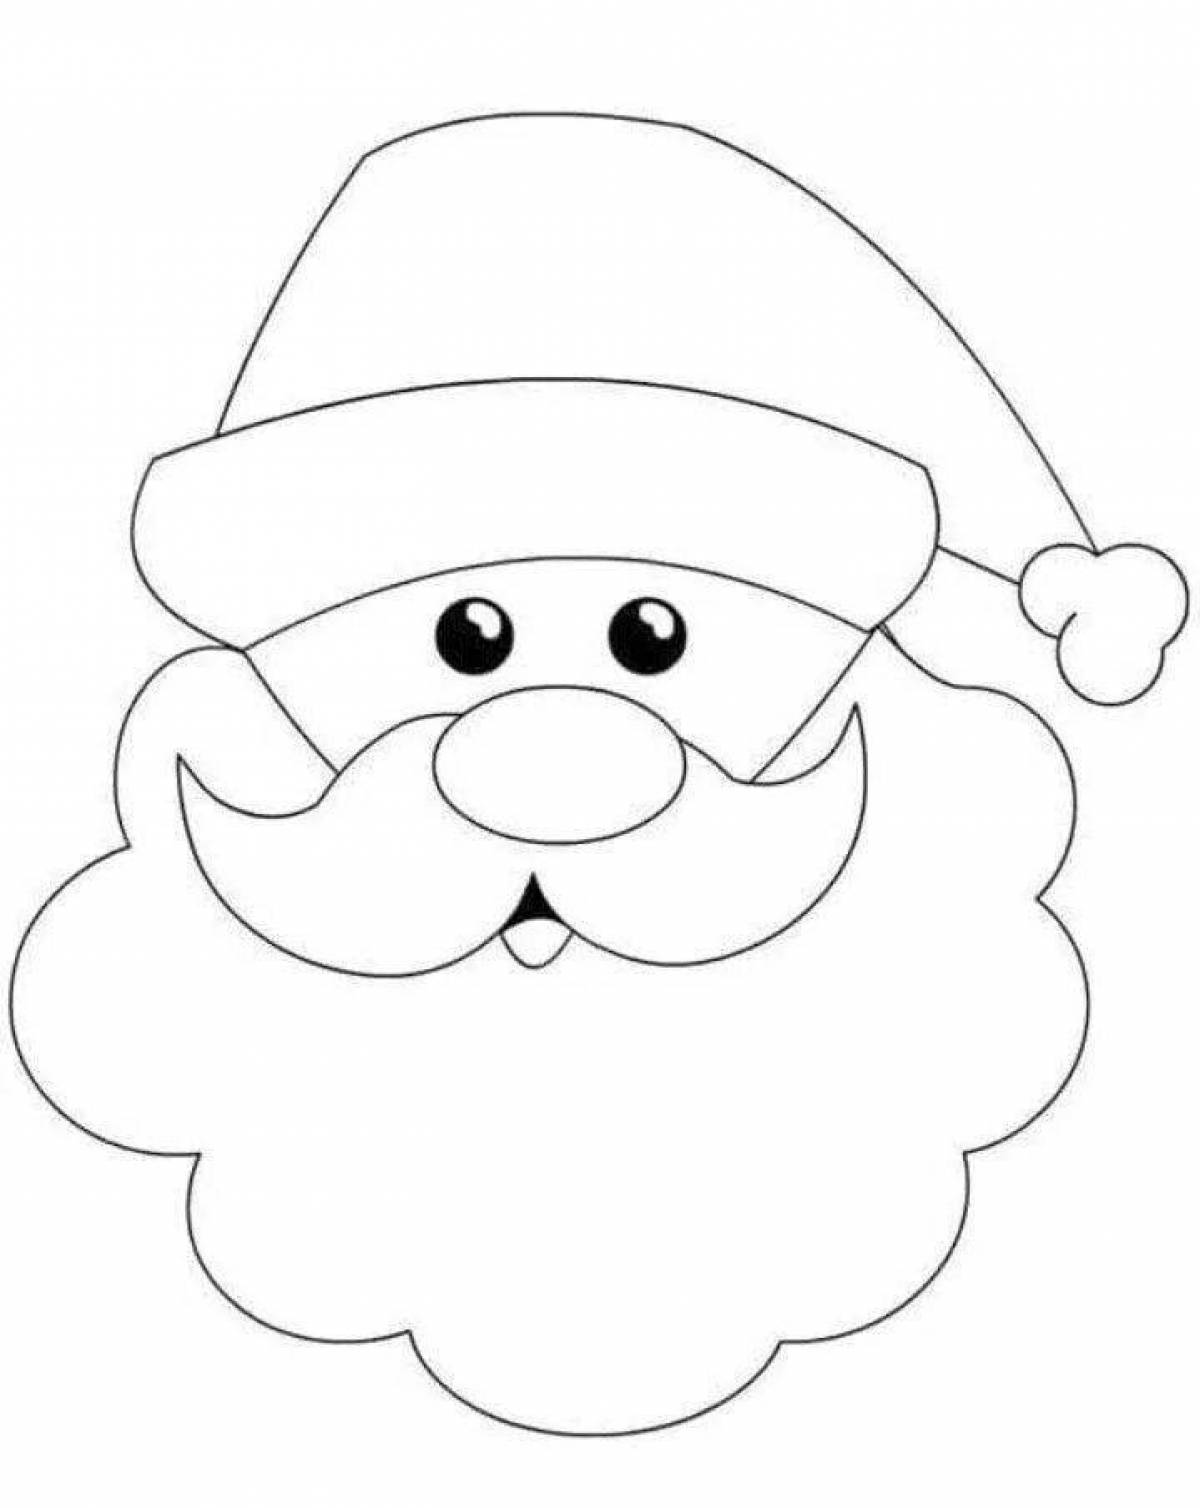 Coloring page adorable santa claus head